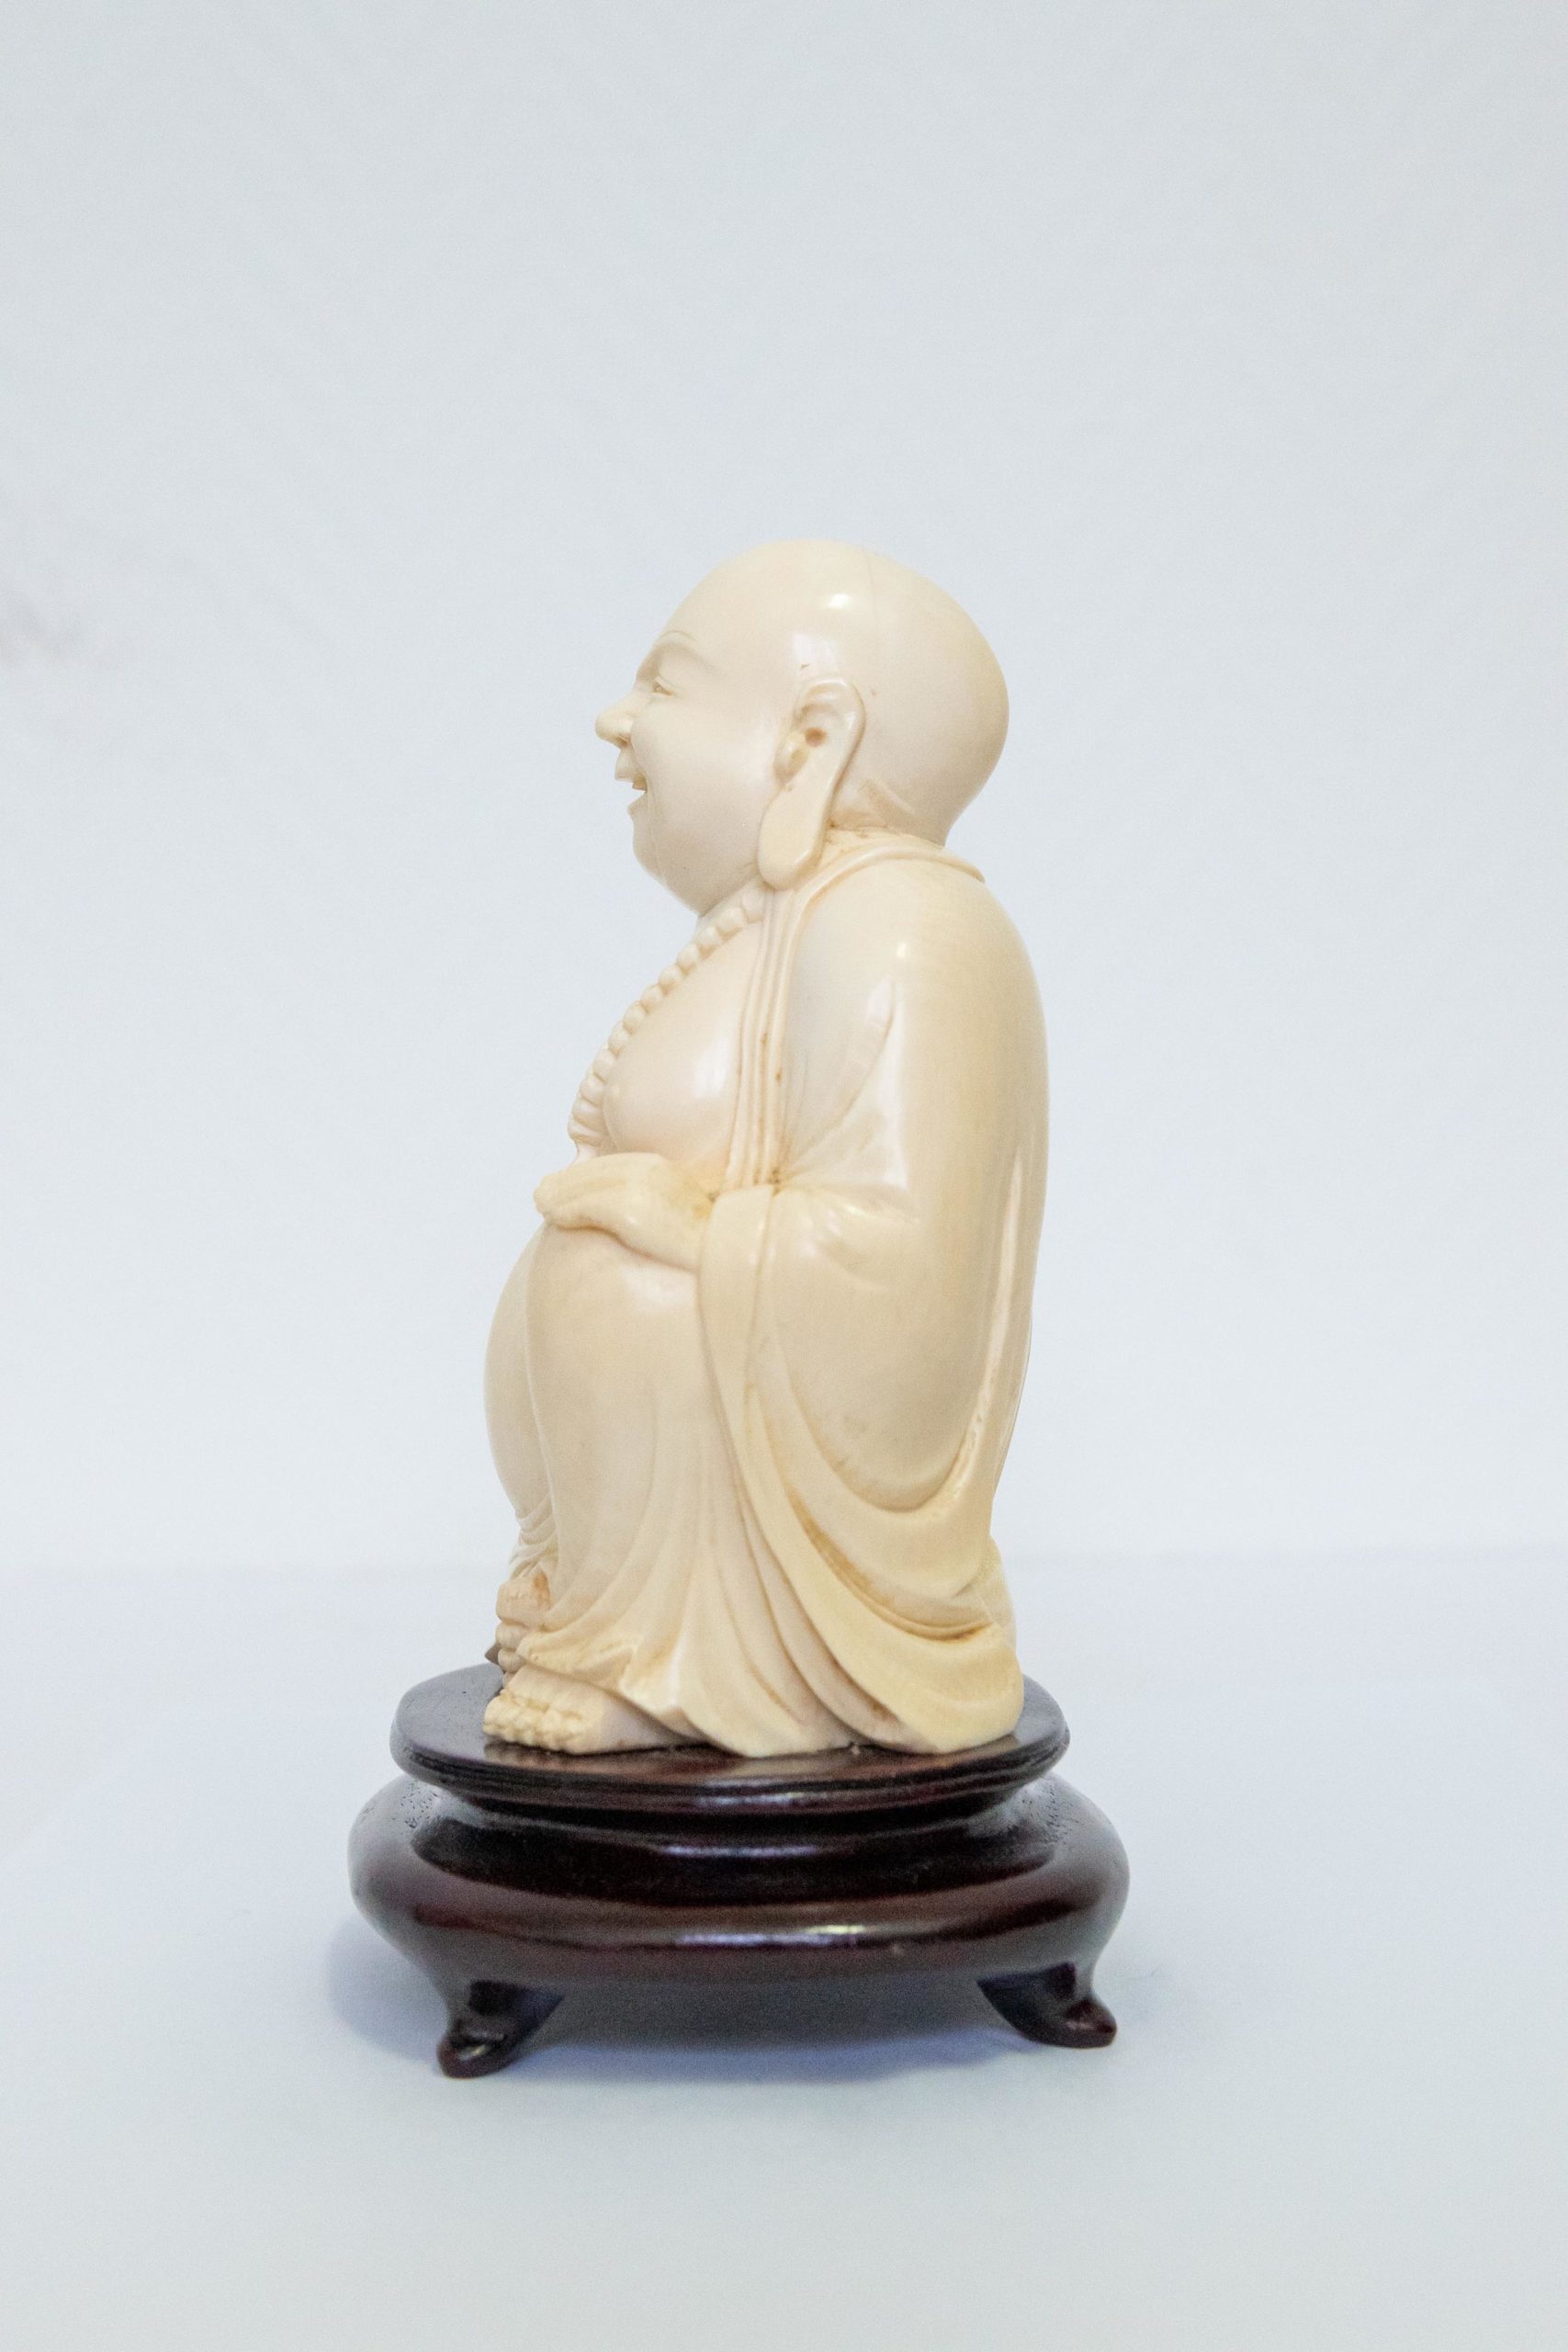 Sculpture-asiatique-bouddha-XIXe-1900-aurore-morisse-antiquaire-aurore-morisse-collection-décoration-antiquités-expertise-affaire-conclue14